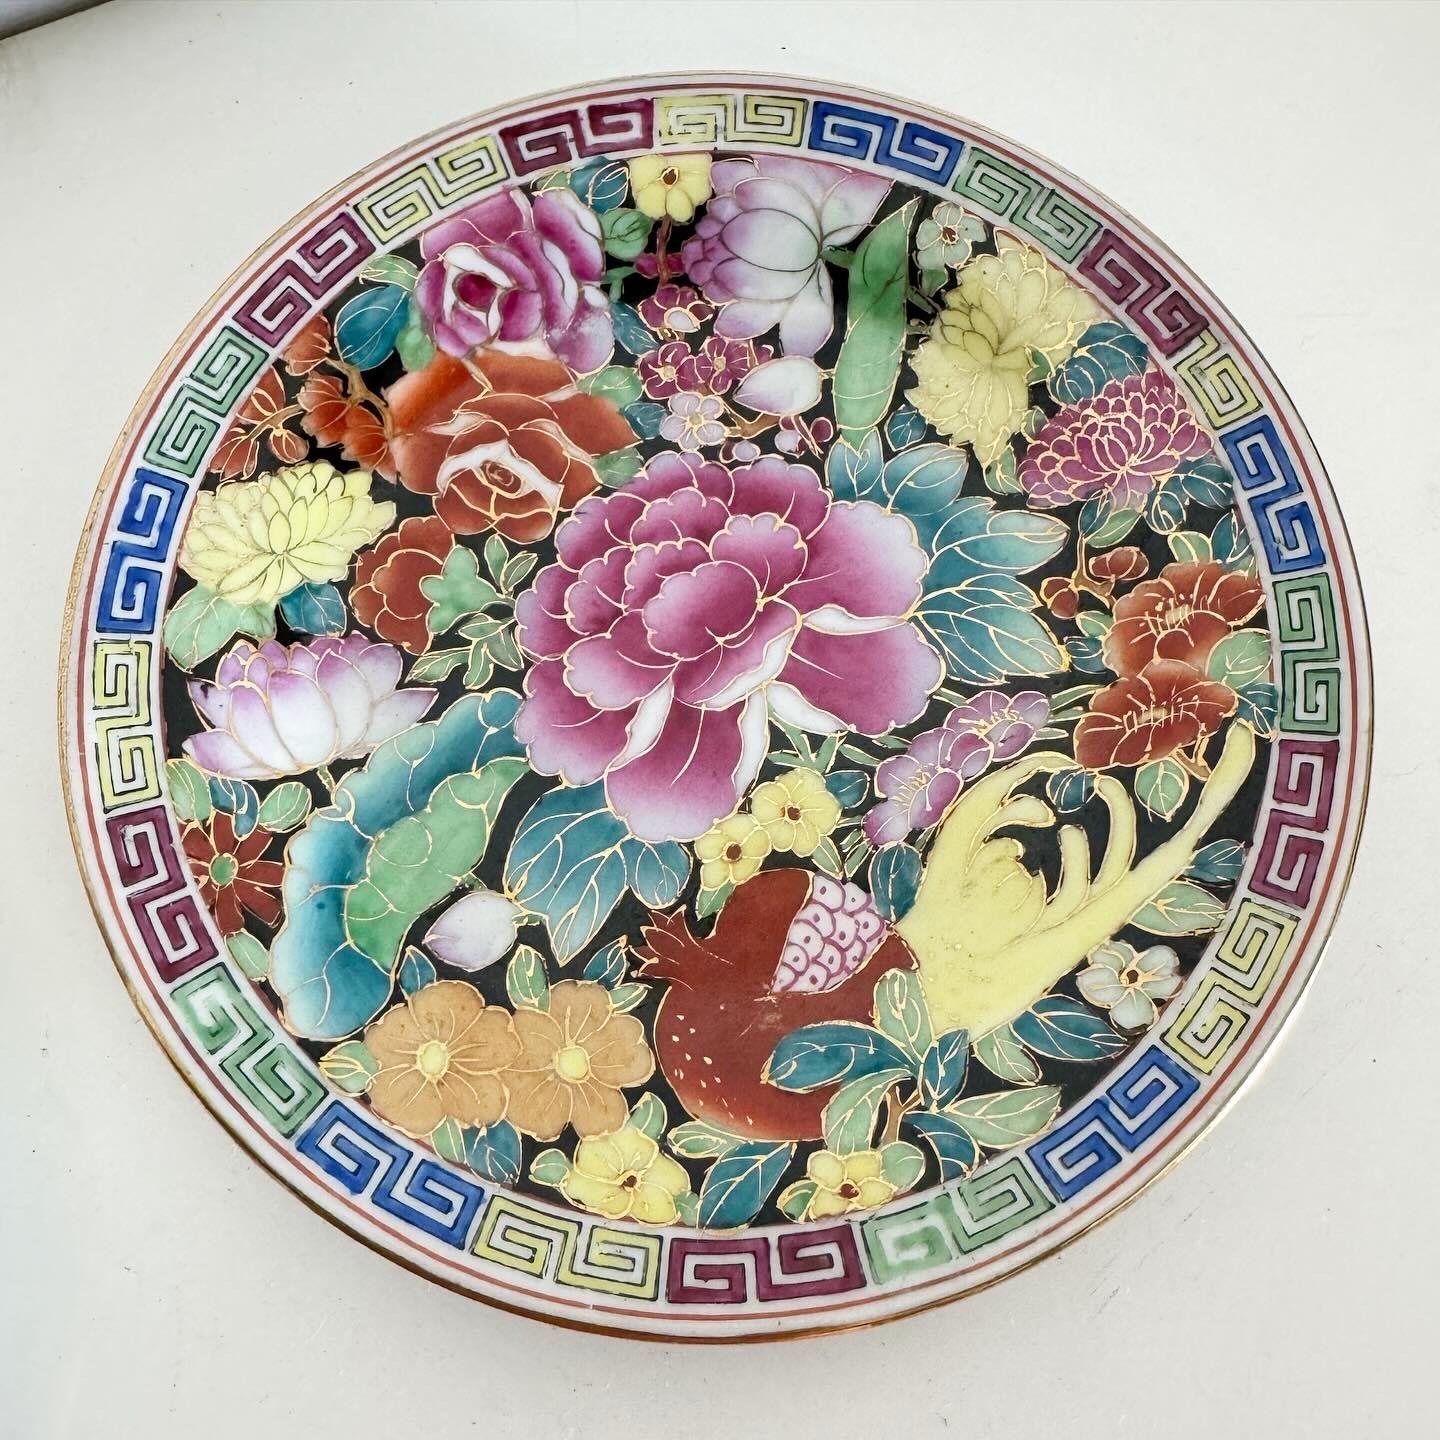 Lassen Sie sich von der Kunstfertigkeit der handbemalten chinesischen Vintage-Porzellanteller verzaubern. Dieses Paar bringt das reiche kulturelle Erbe und die zeitlose Eleganz des traditionellen chinesischen Porzellans in Ihre Sammlung. Jeder